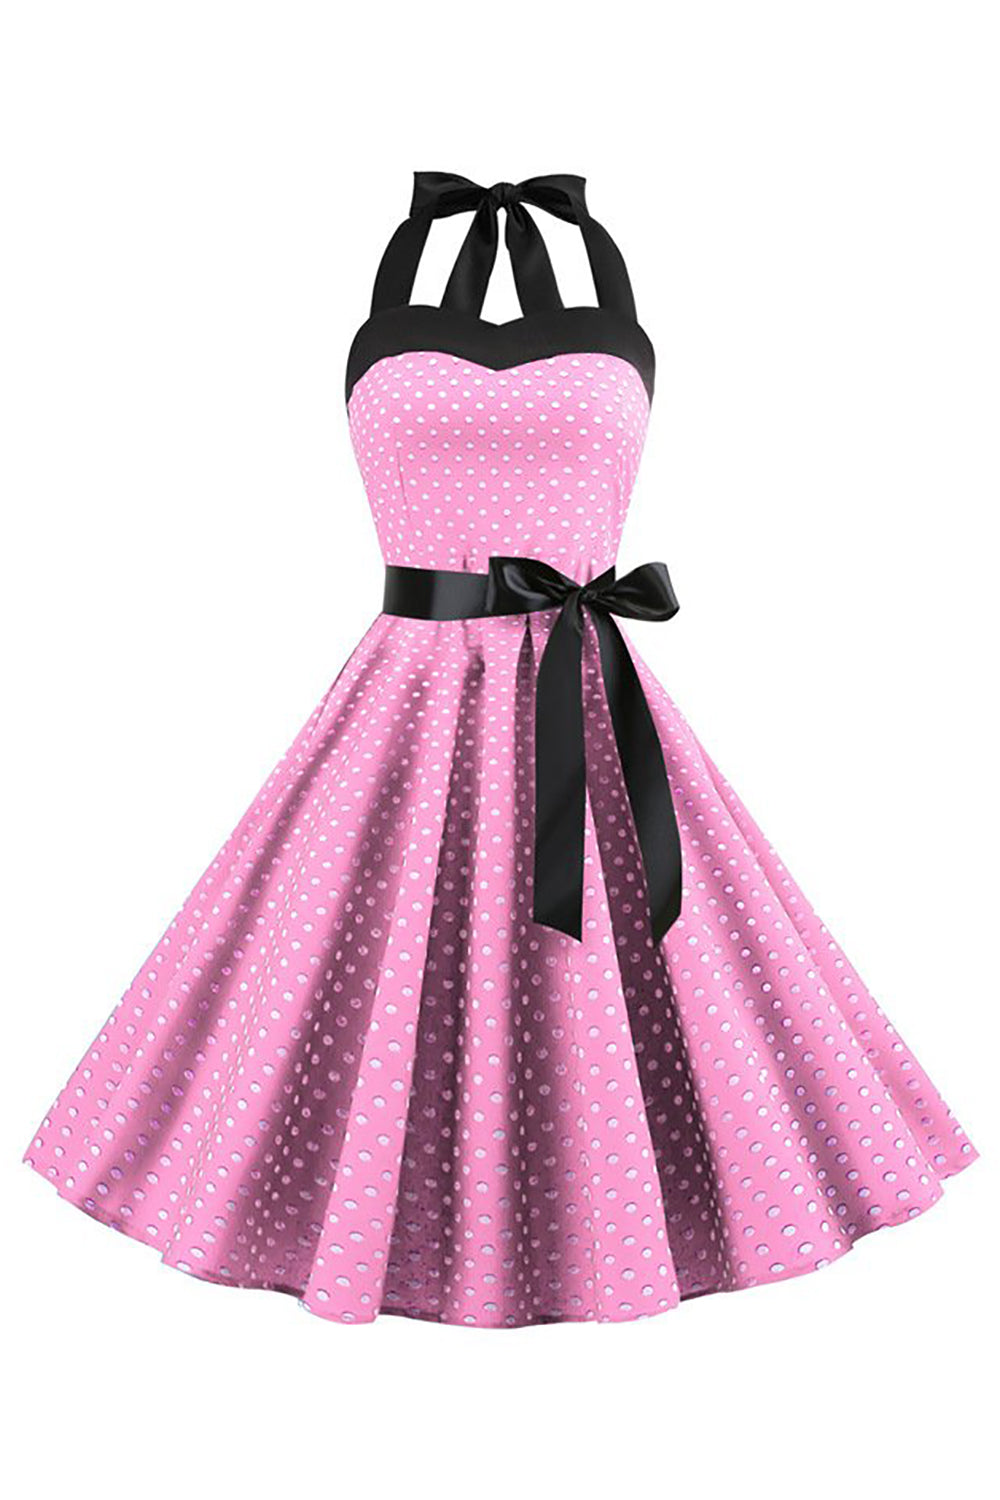 Rosa polka prikker Halter kjole fra 1950-tallet med sløyfeknute